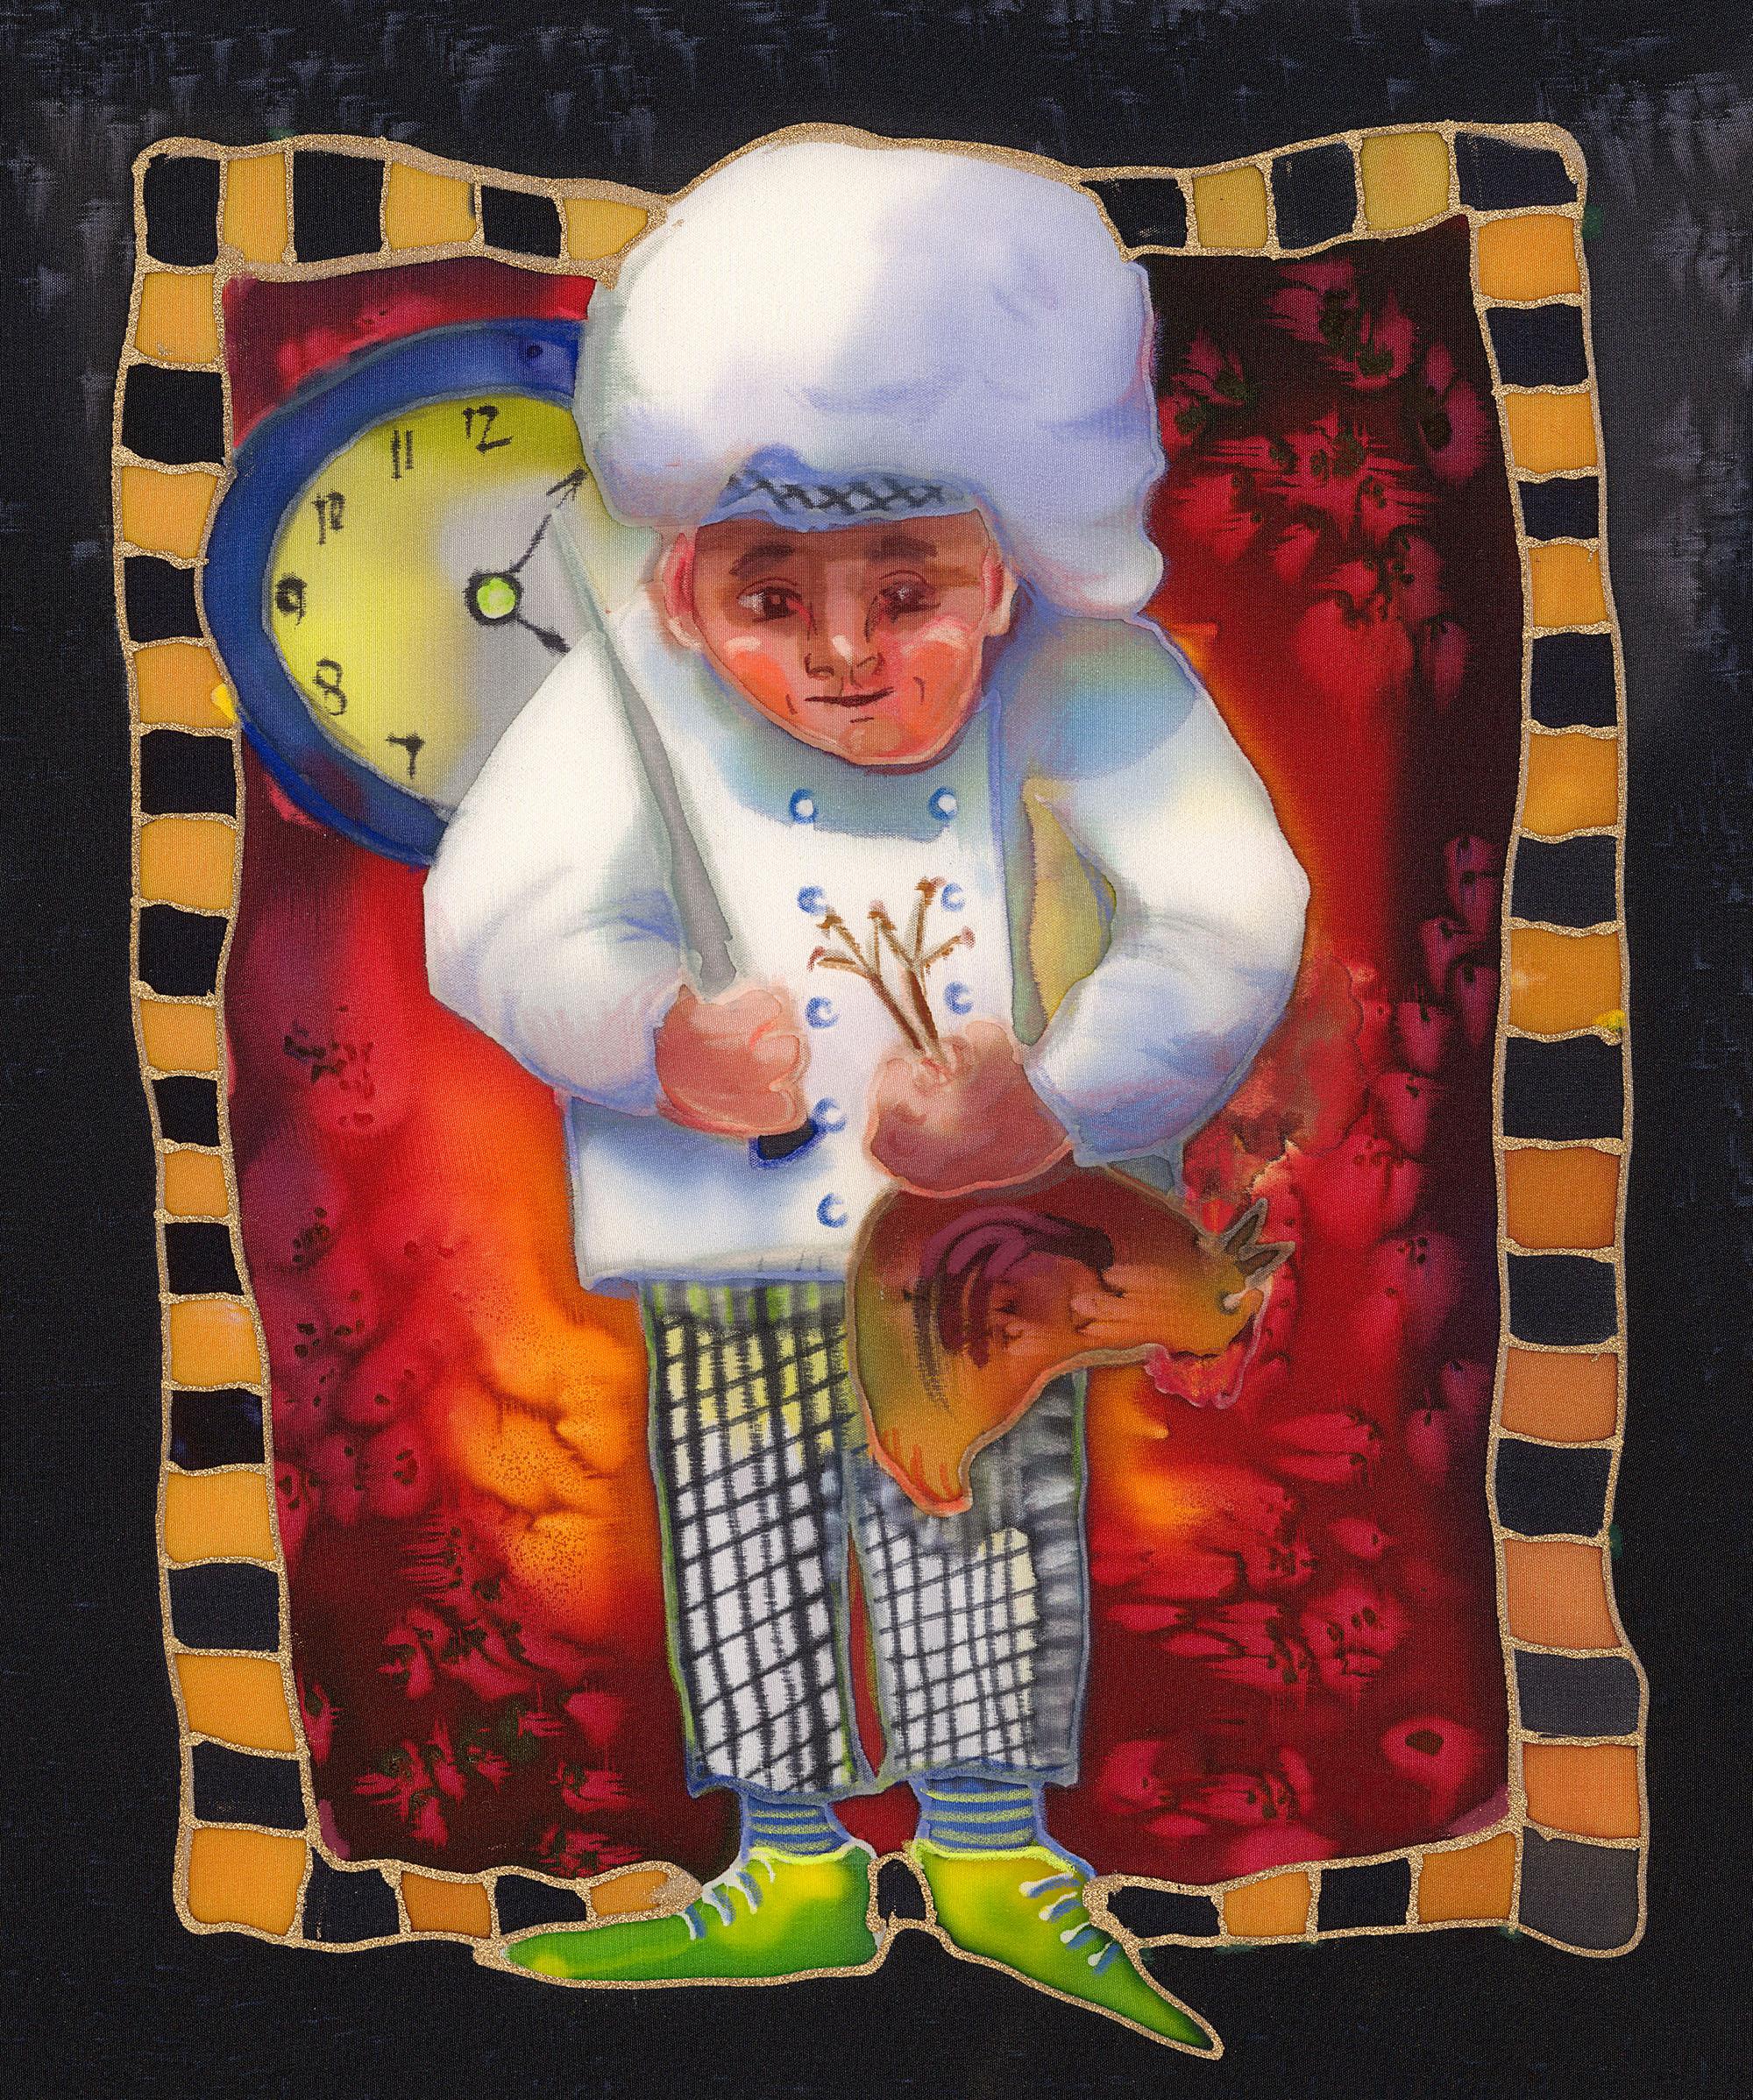 Le Petit Chef Reproduction contemporaine par giclée sur papier d'art Nancy Cawdrey - Print de Nancy Dunlop Cawdrey